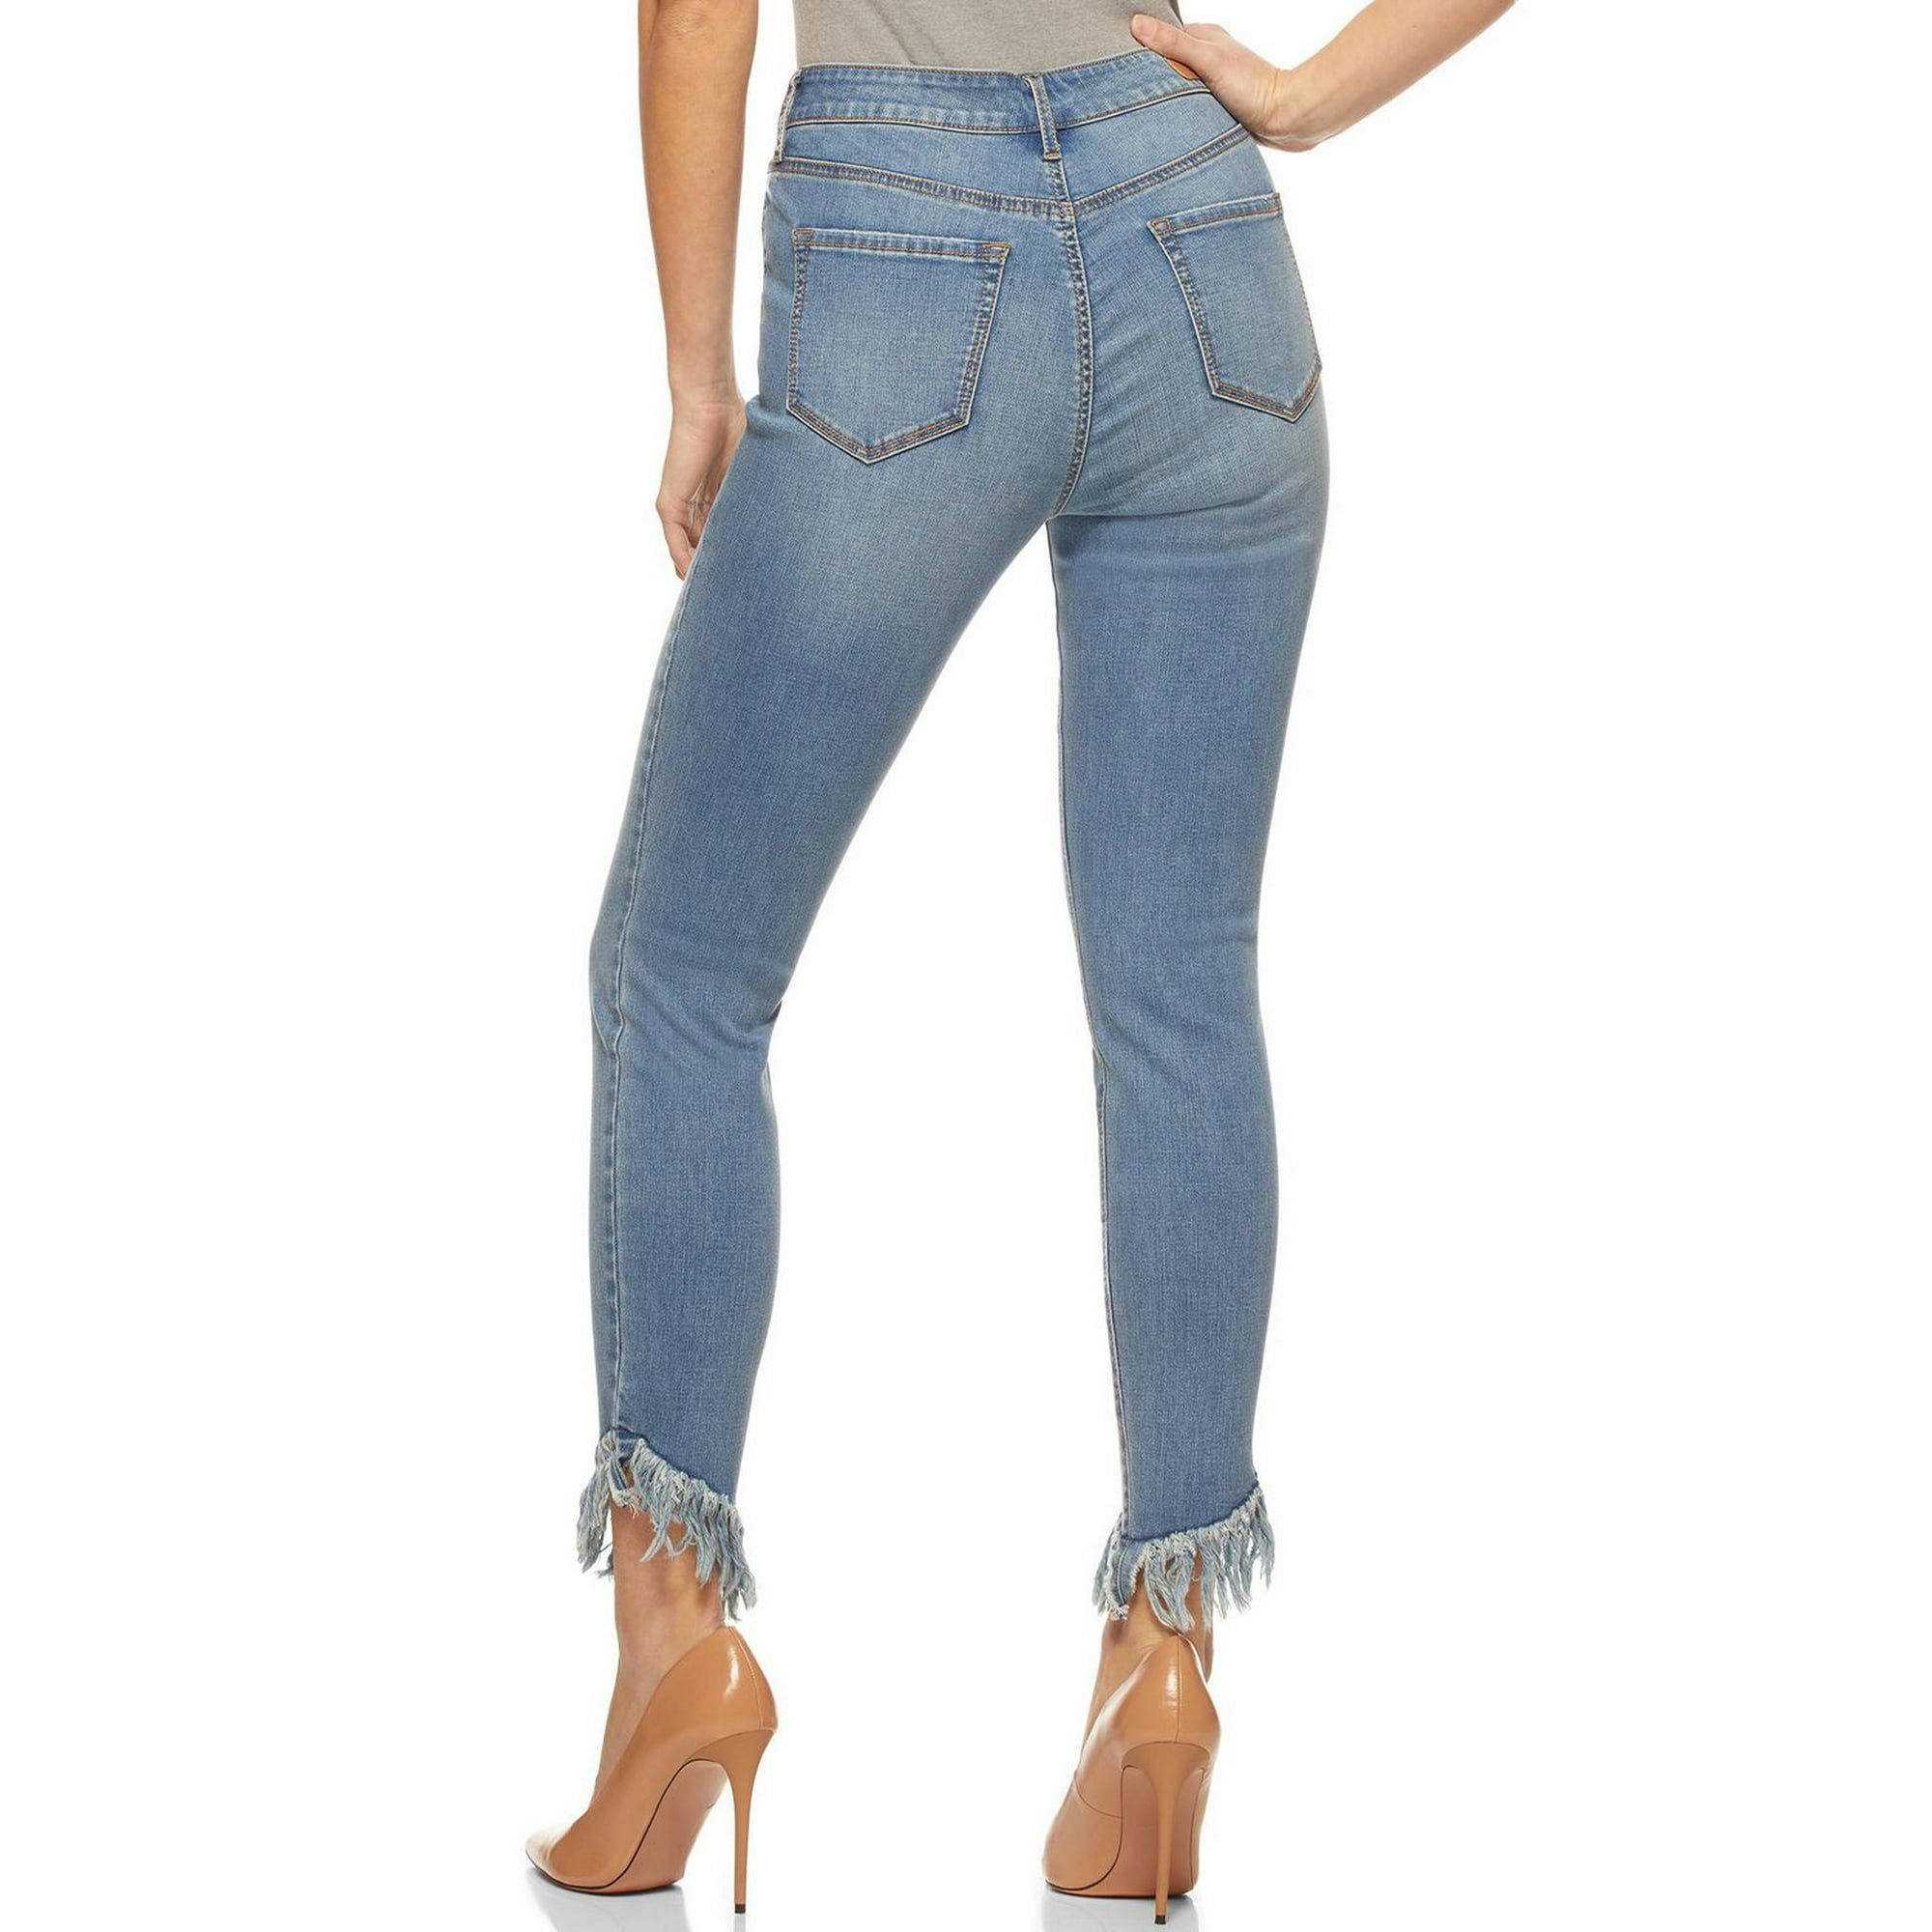 Jeans Skinny By Sofia By Sofia Vergara Size: 16